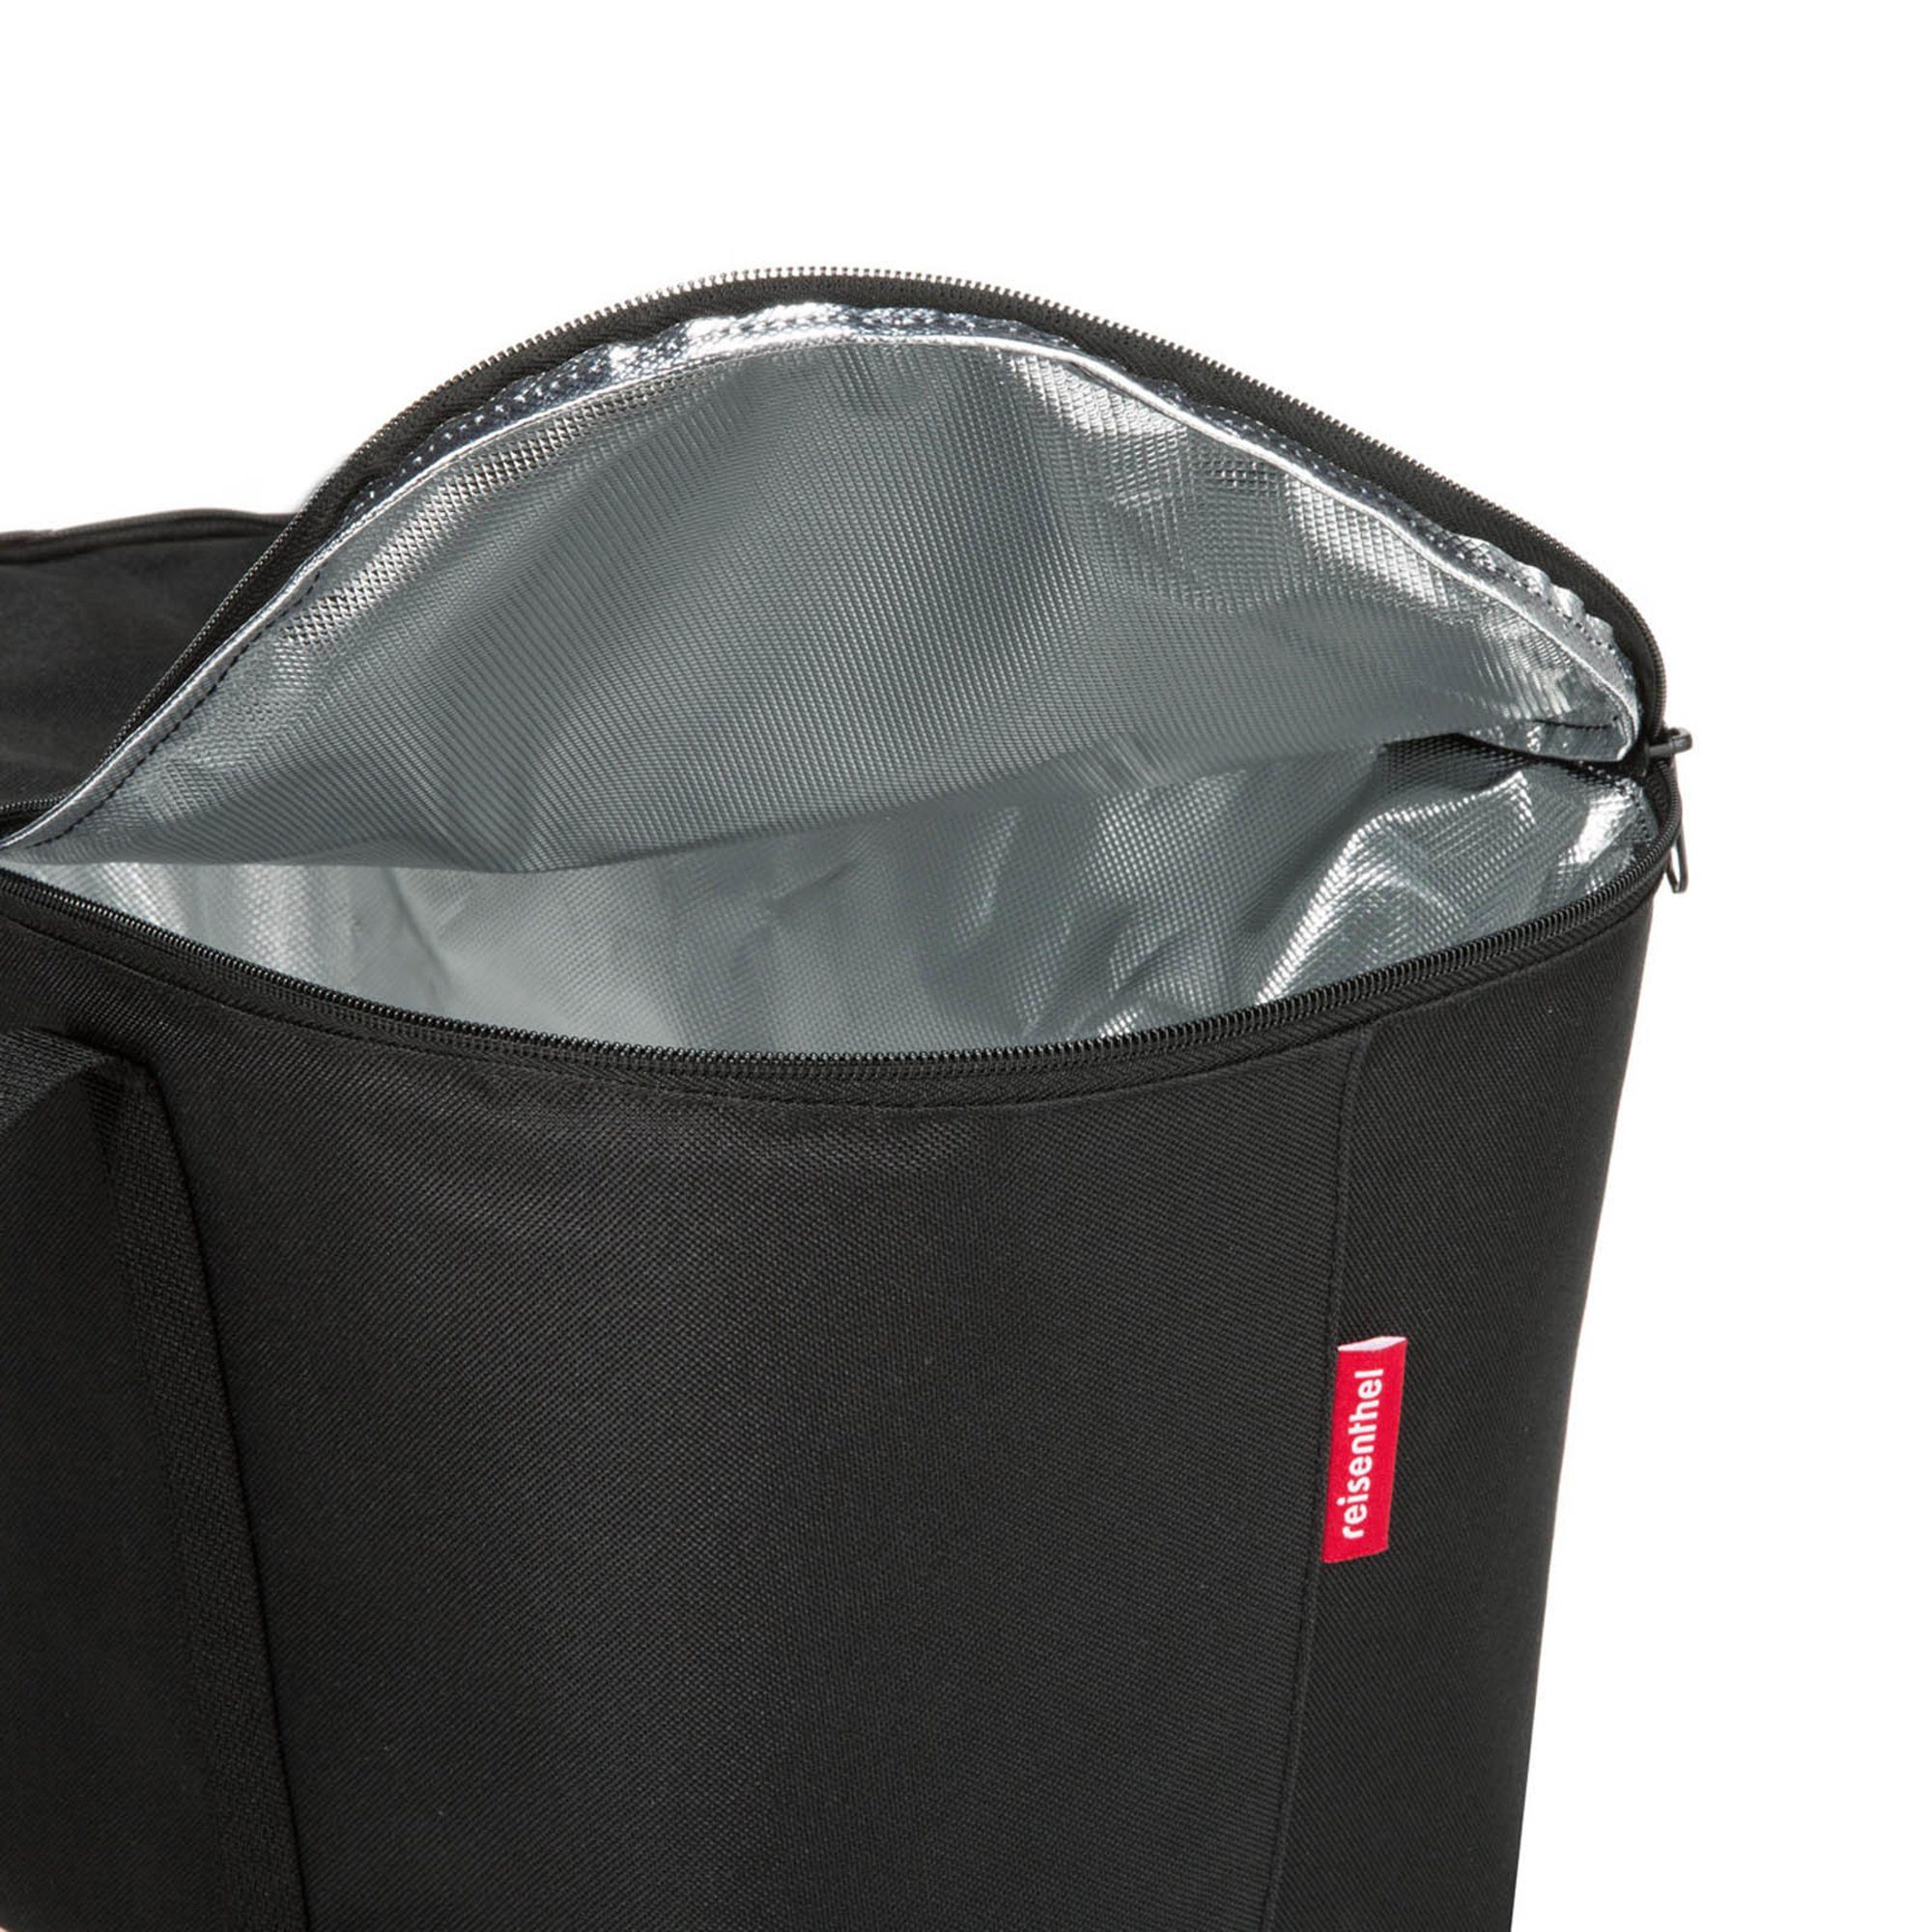 Aufbewahrungstasche Kühltasche black Kühltasche REISENTHEL® coolerbag,